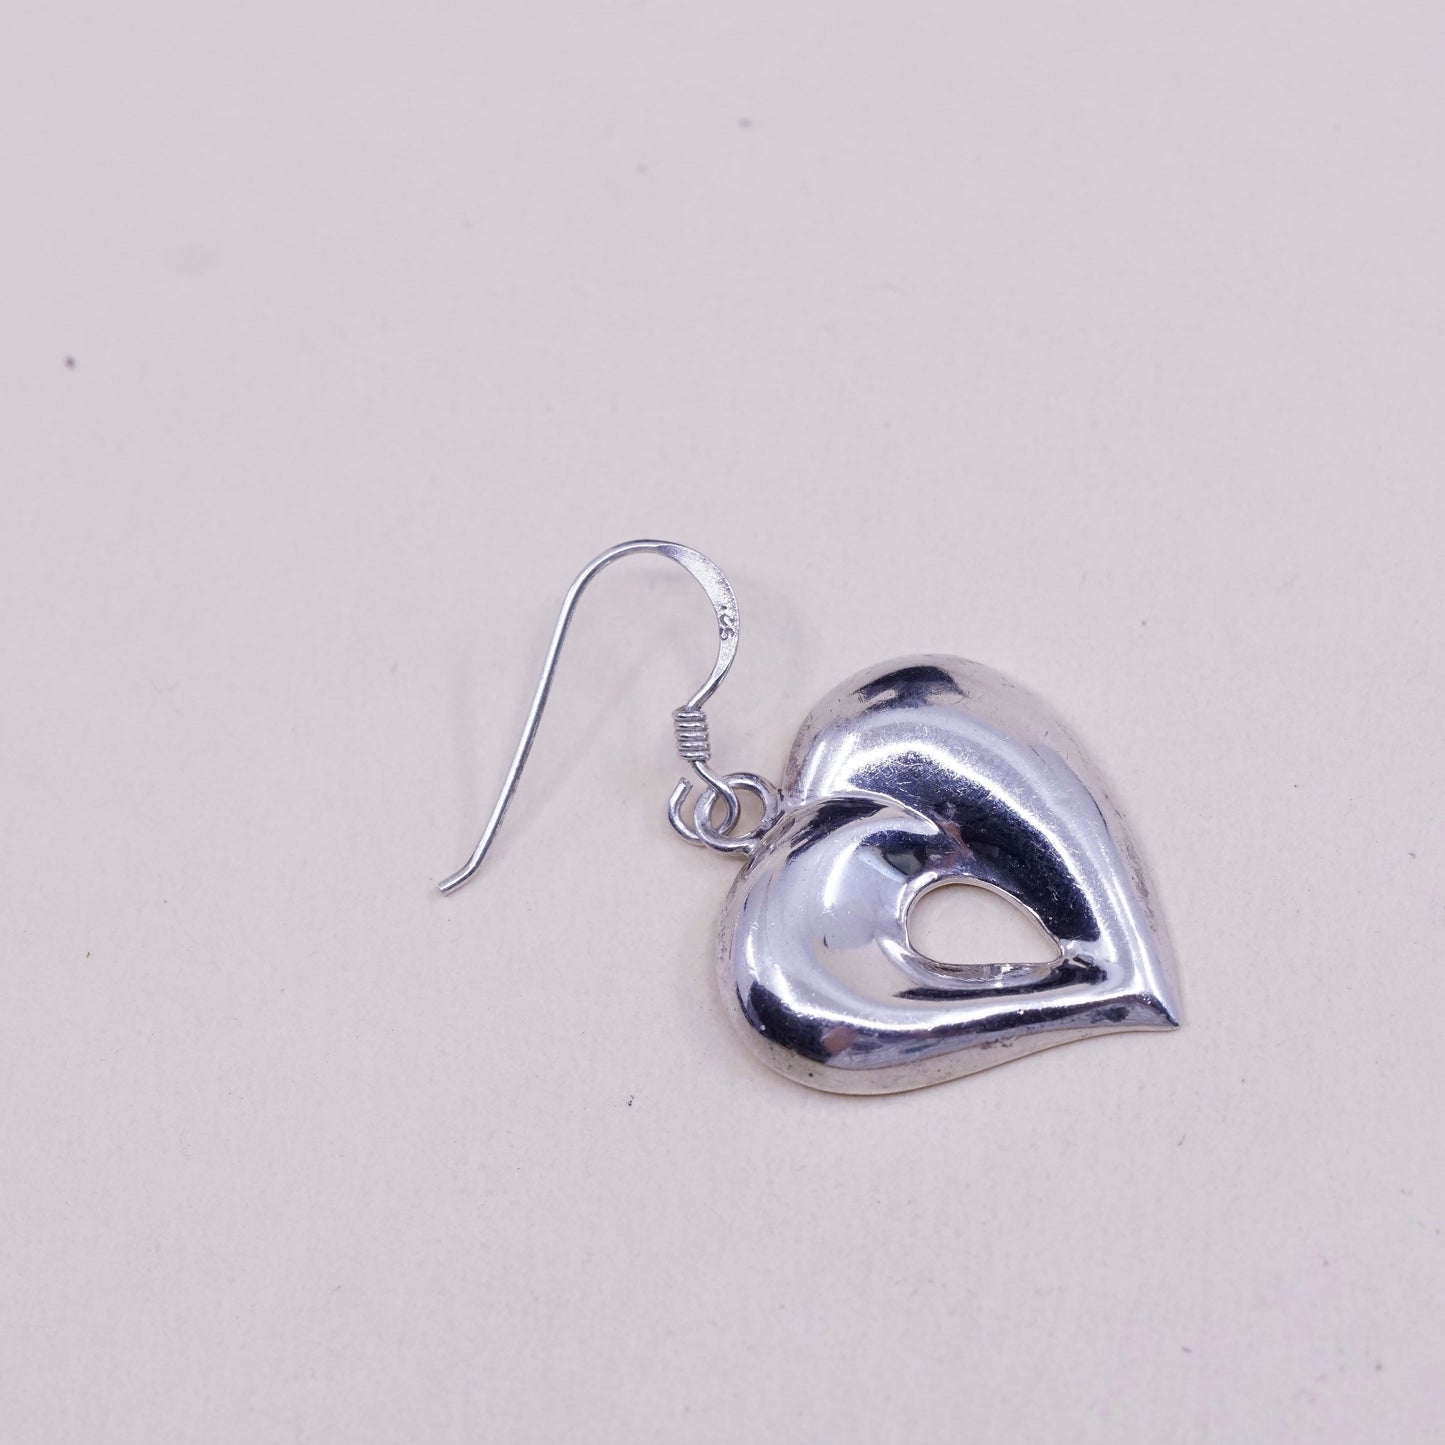 vtg sterling silver heart shaped drop earrings, puffy lightweight 925 heart